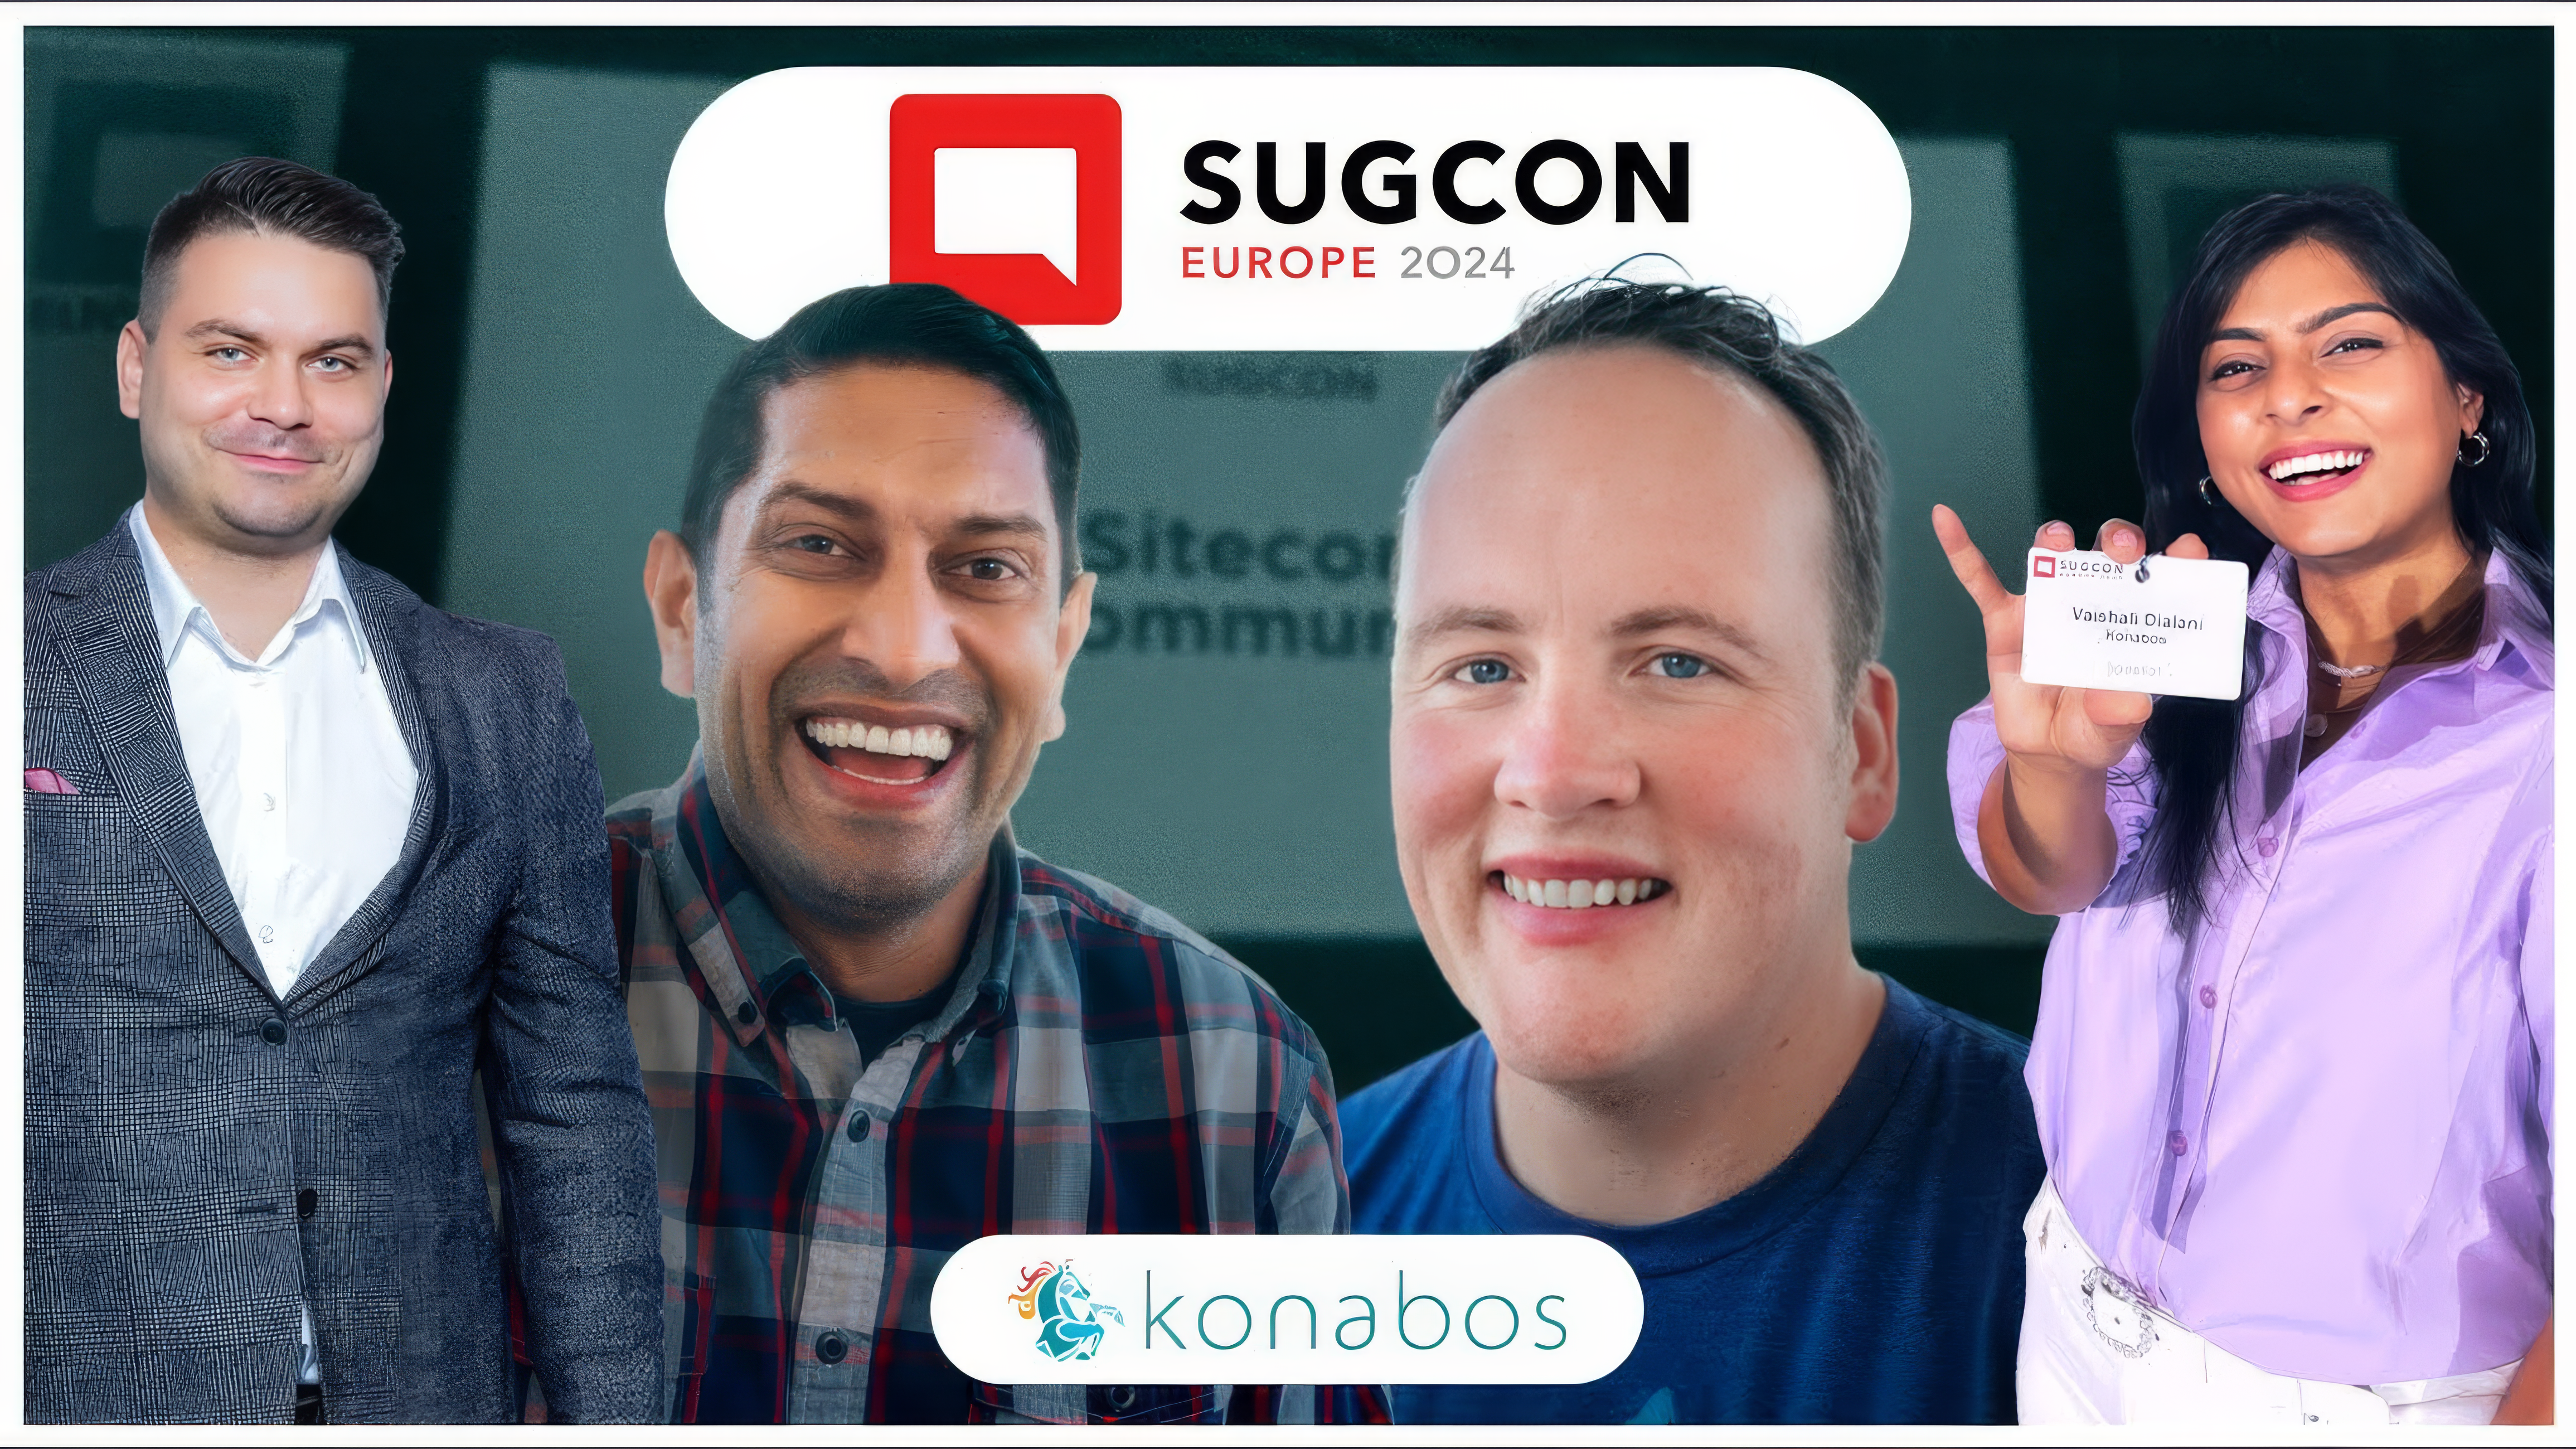 SUGCON EU 2024 | New Sitecore CEO, SITECORE XP 10.4 & The Future of Sitecore